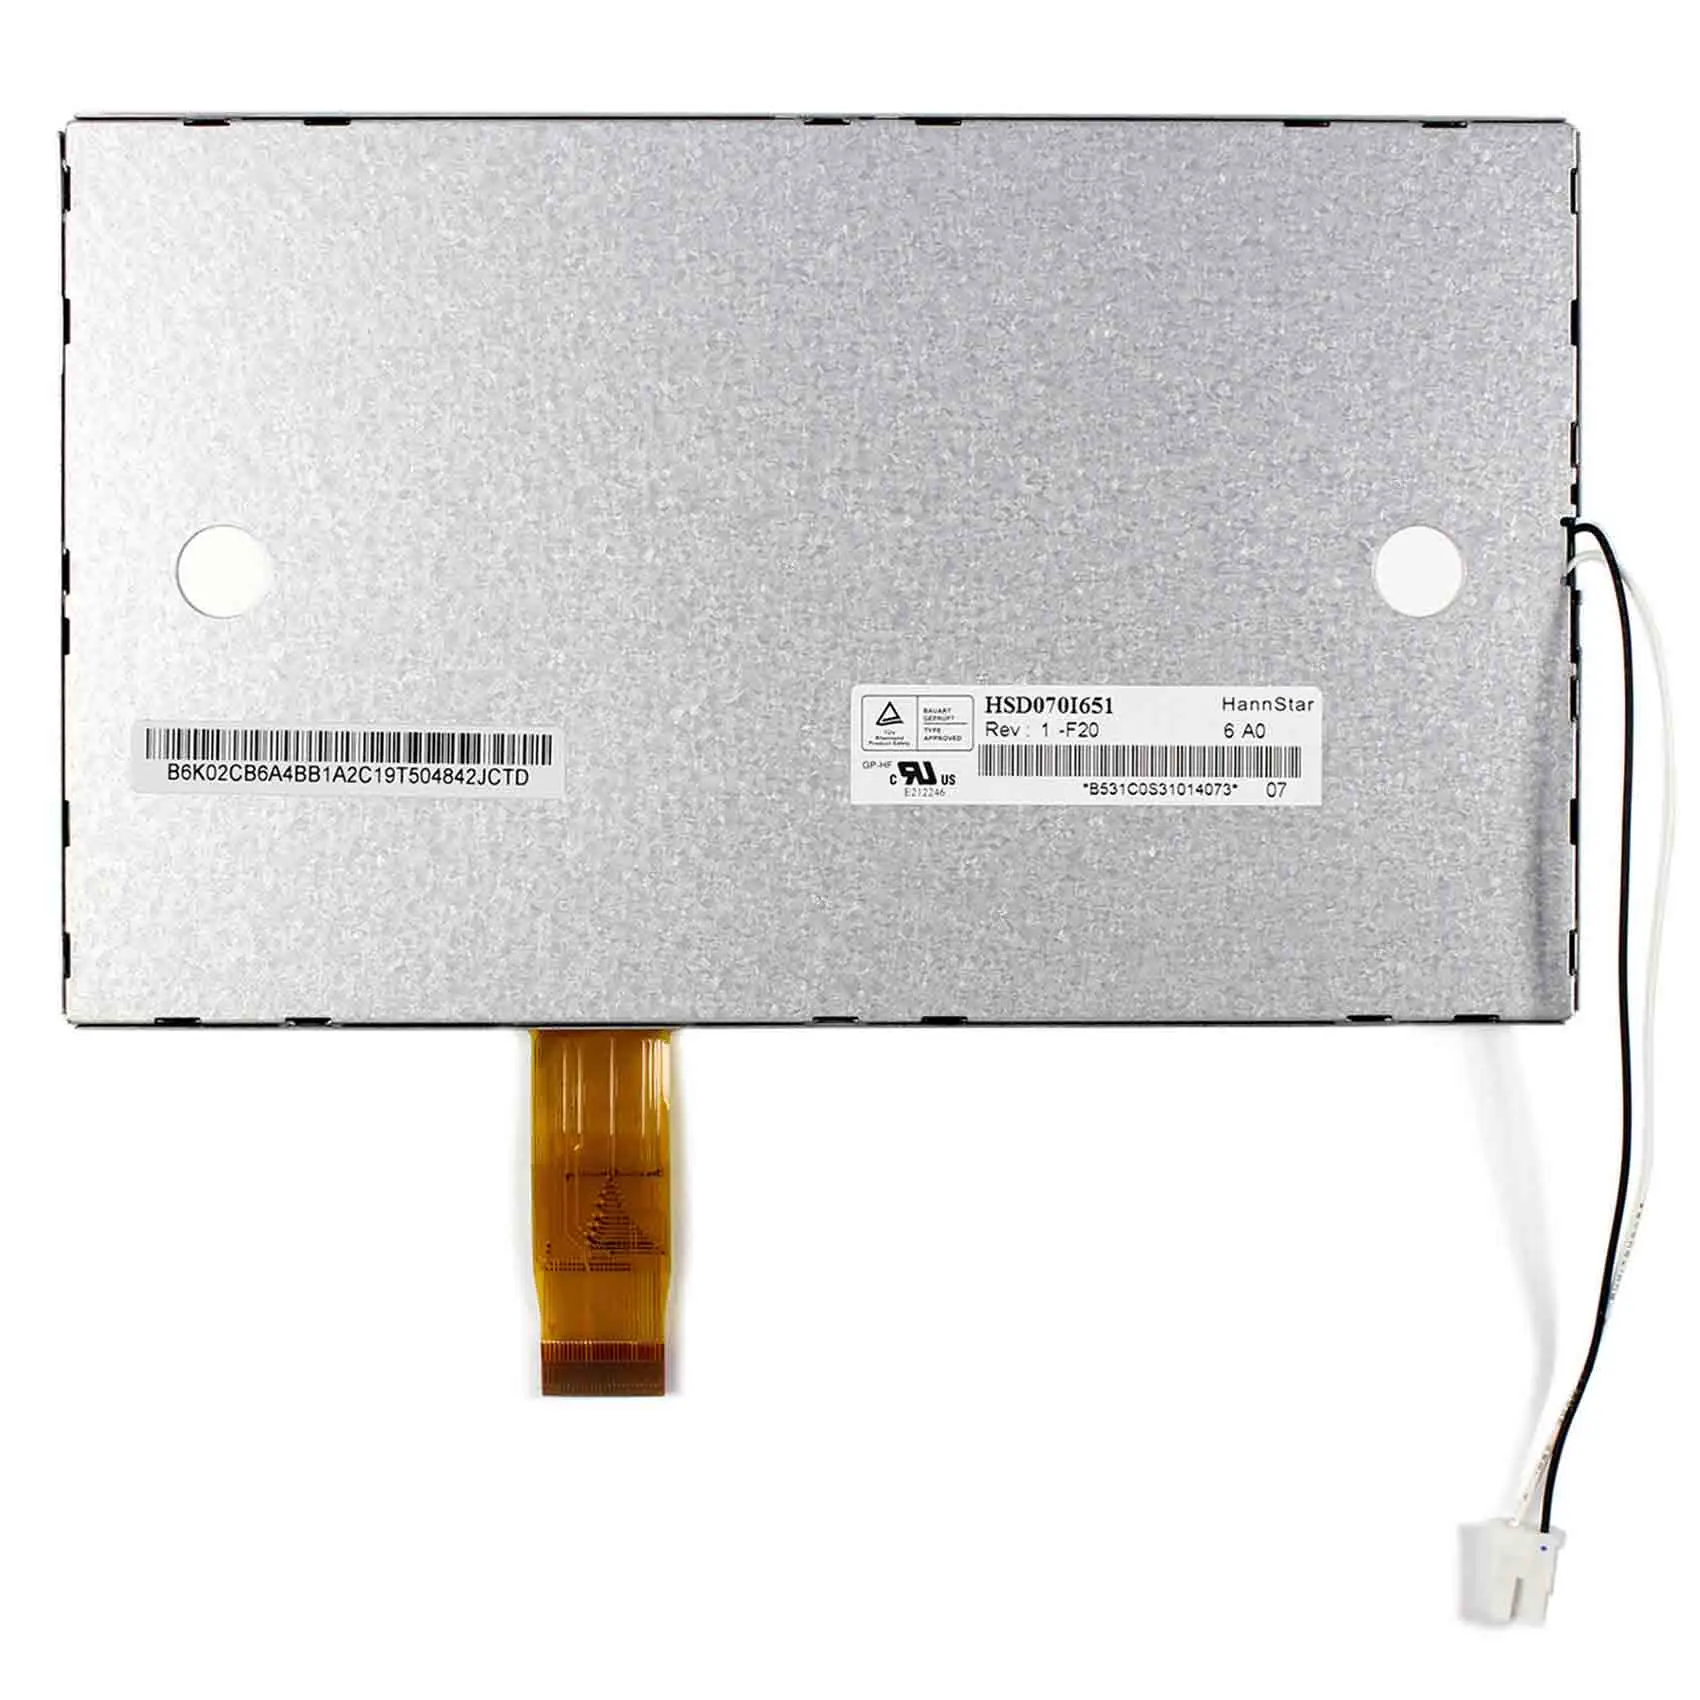 Analog screen AV LCD driver board KIT controller for 480X234 HSD070I651 monitor 